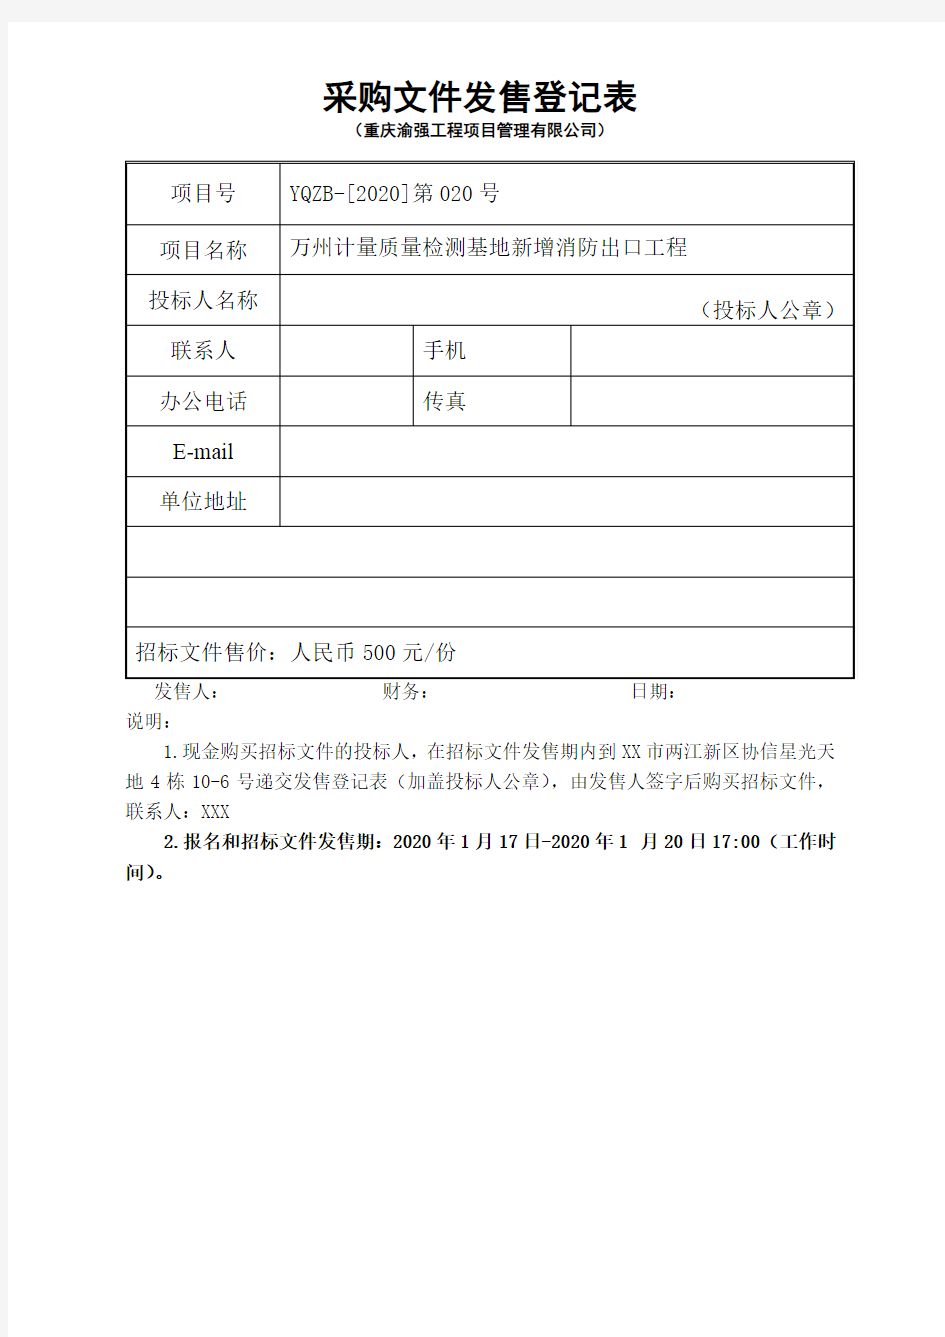 采购文件发售登记表(重庆渝强工程项目管理有限公司)【模板】